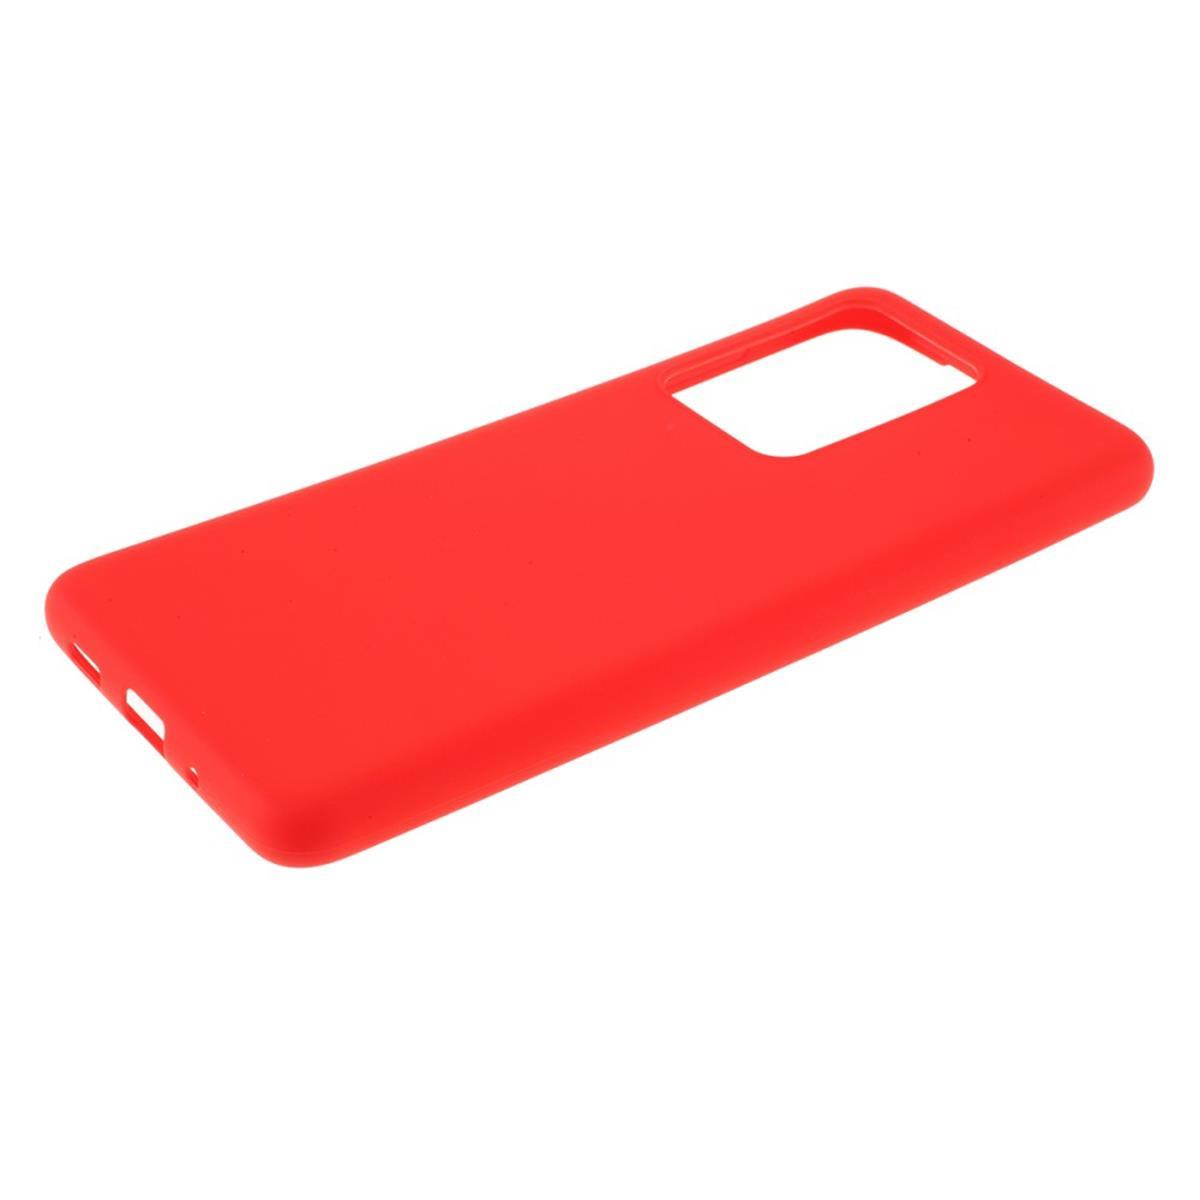 10 Redmi aus / Silikon, Backcover, Rot COVERKINGZ Handycase Prime, Xiaomi, Redmi 10